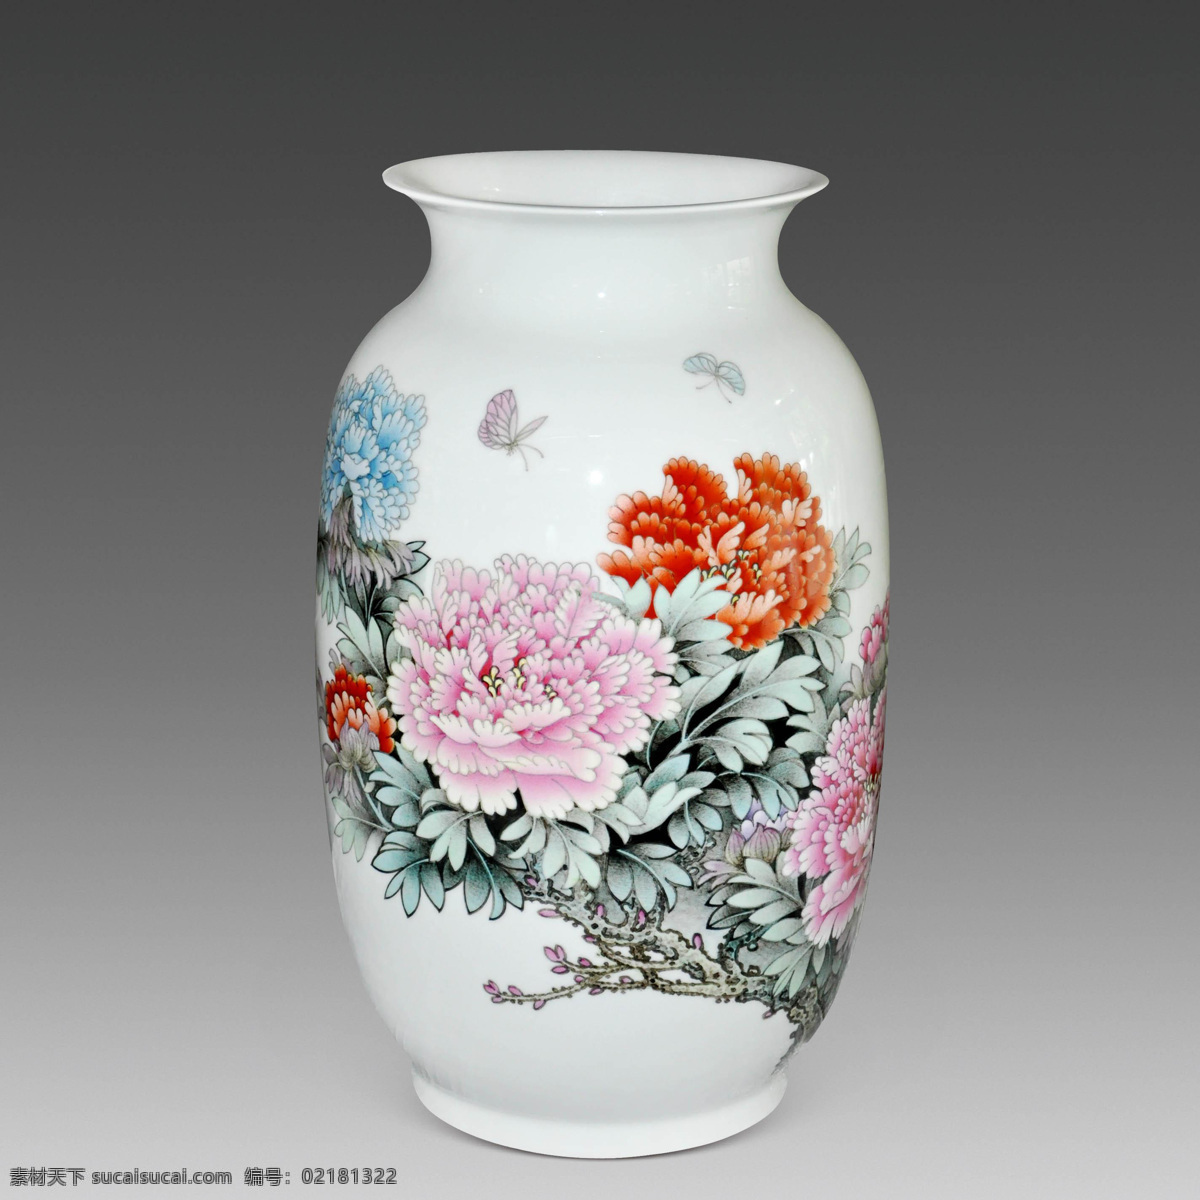 花瓶 陶瓷 瓷器 瓷罐 彩色陶瓷 瓷瓶 牡丹 文化艺术 传统文化